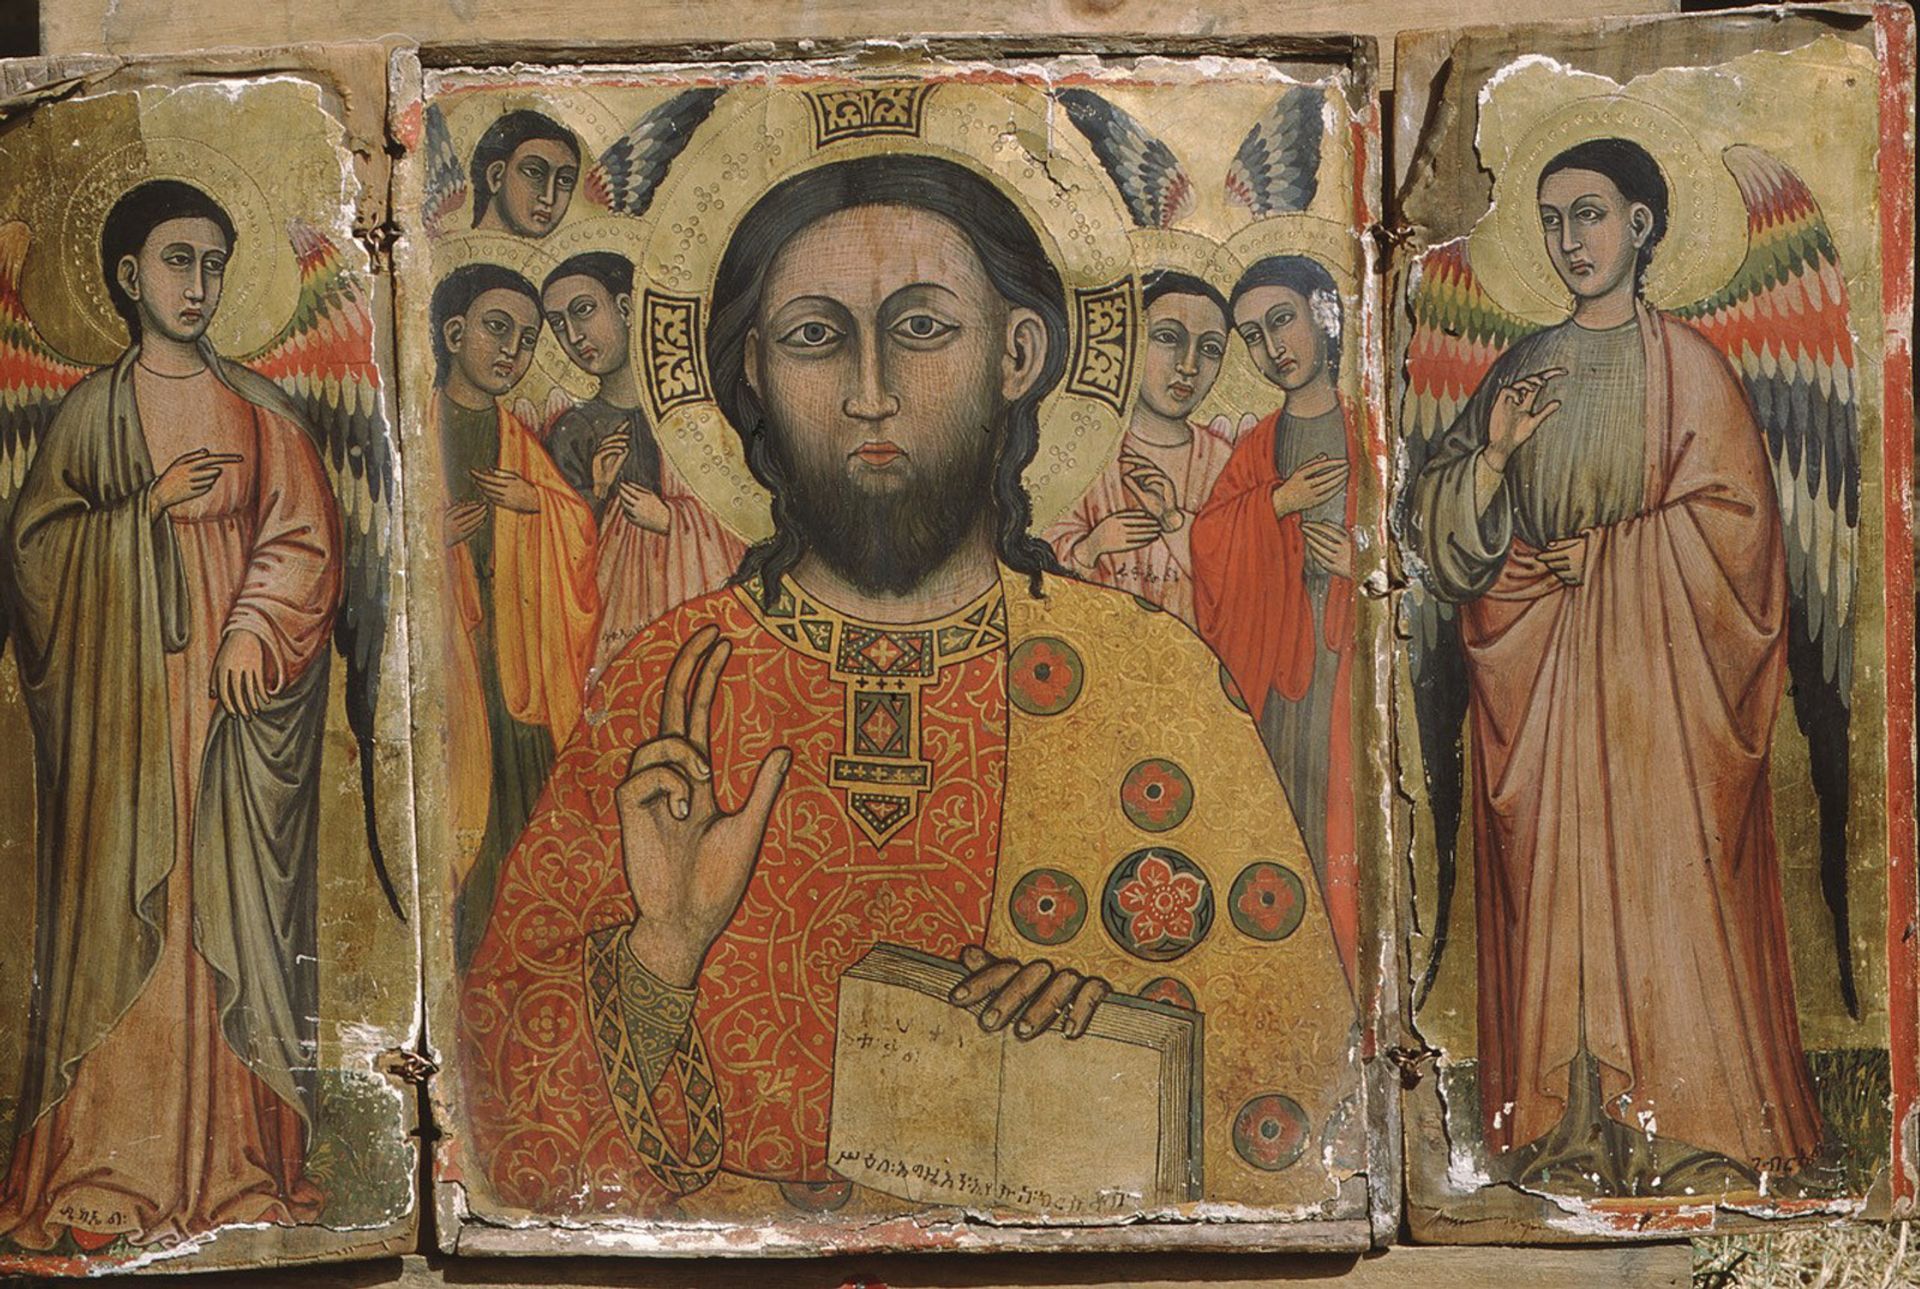 הטריפטיכון בדמות ישוע המשיח נחשב עד כה שנעשה בביזנטיון באמצע המאה ה-14, אך מחקר חדש זיהה מאפיינים התואמים לעבודות שעשו ציירים מסיינה במאה הקודמת

ז'אק מרסייה ואלן מתייה


